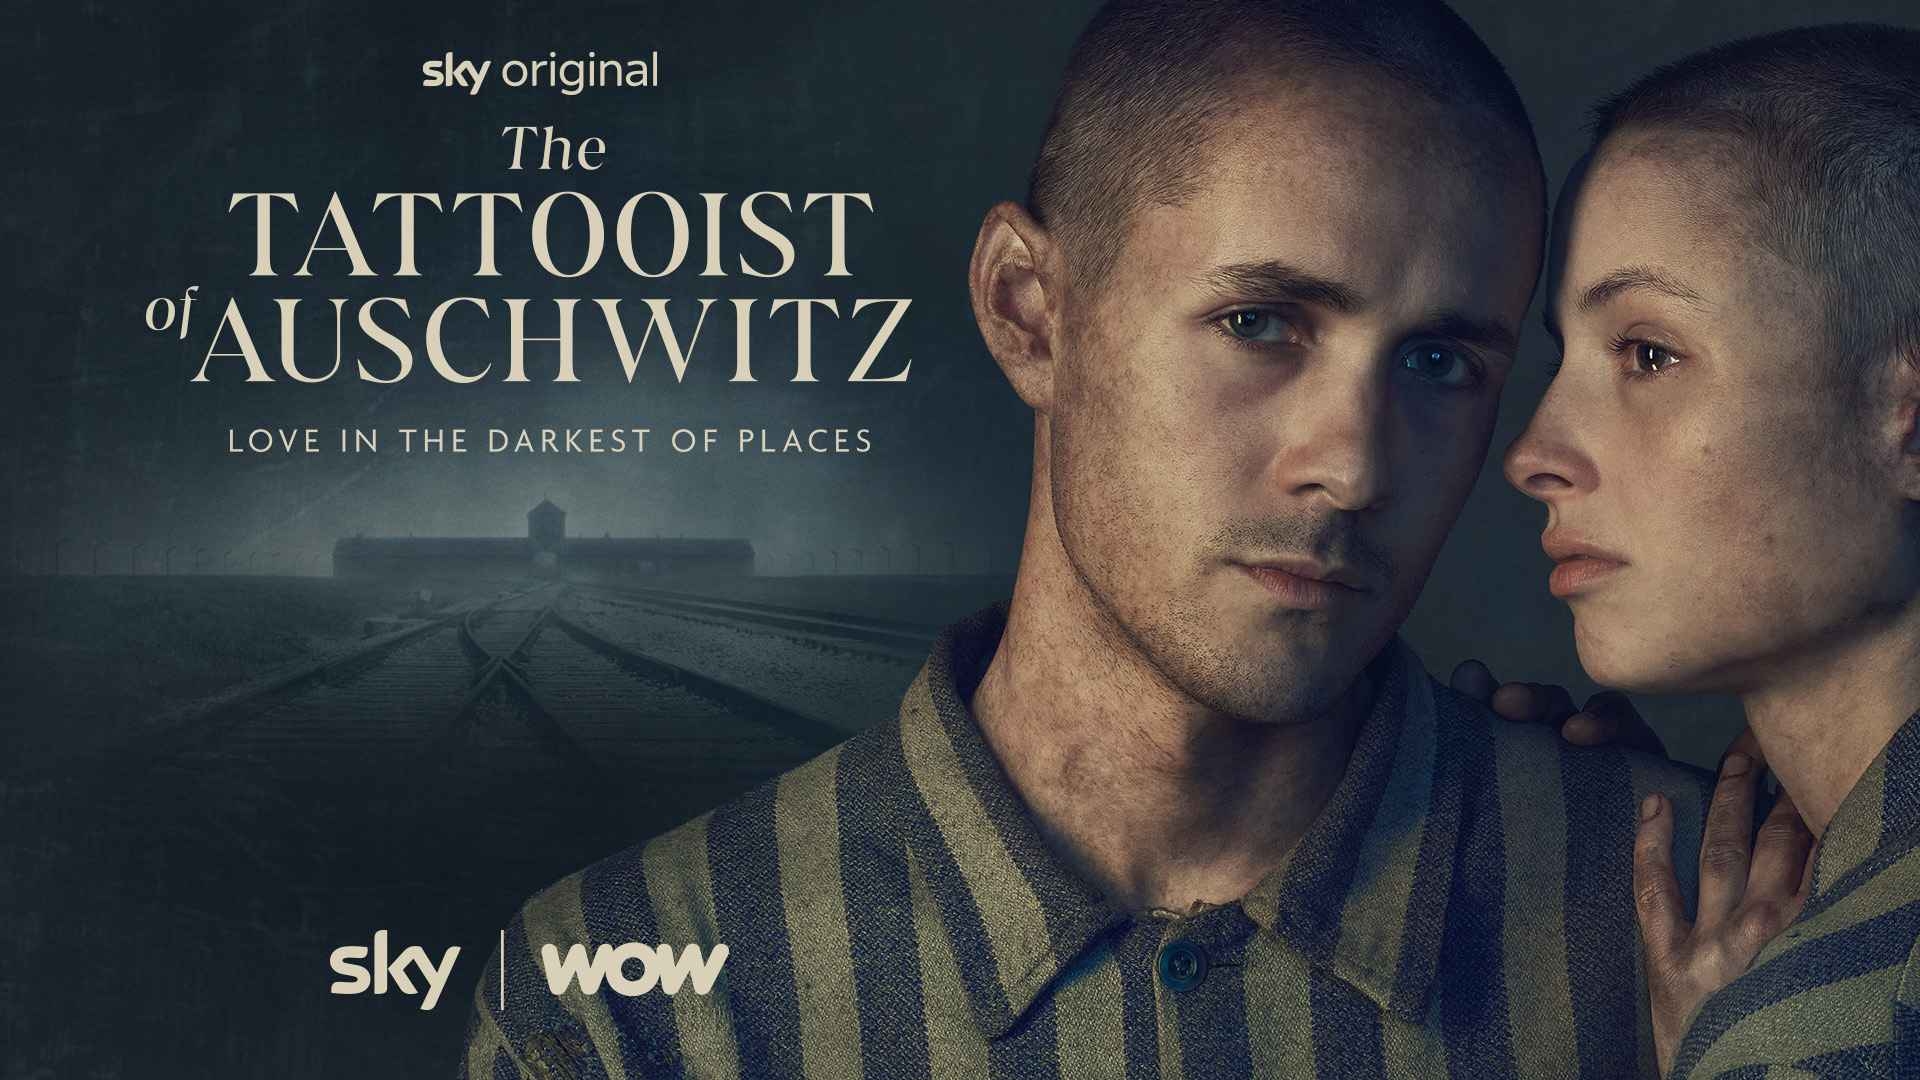 Offizieller Trailer der Sky Original Serie “The Tattooist of Auschwitz” veröffentlicht 